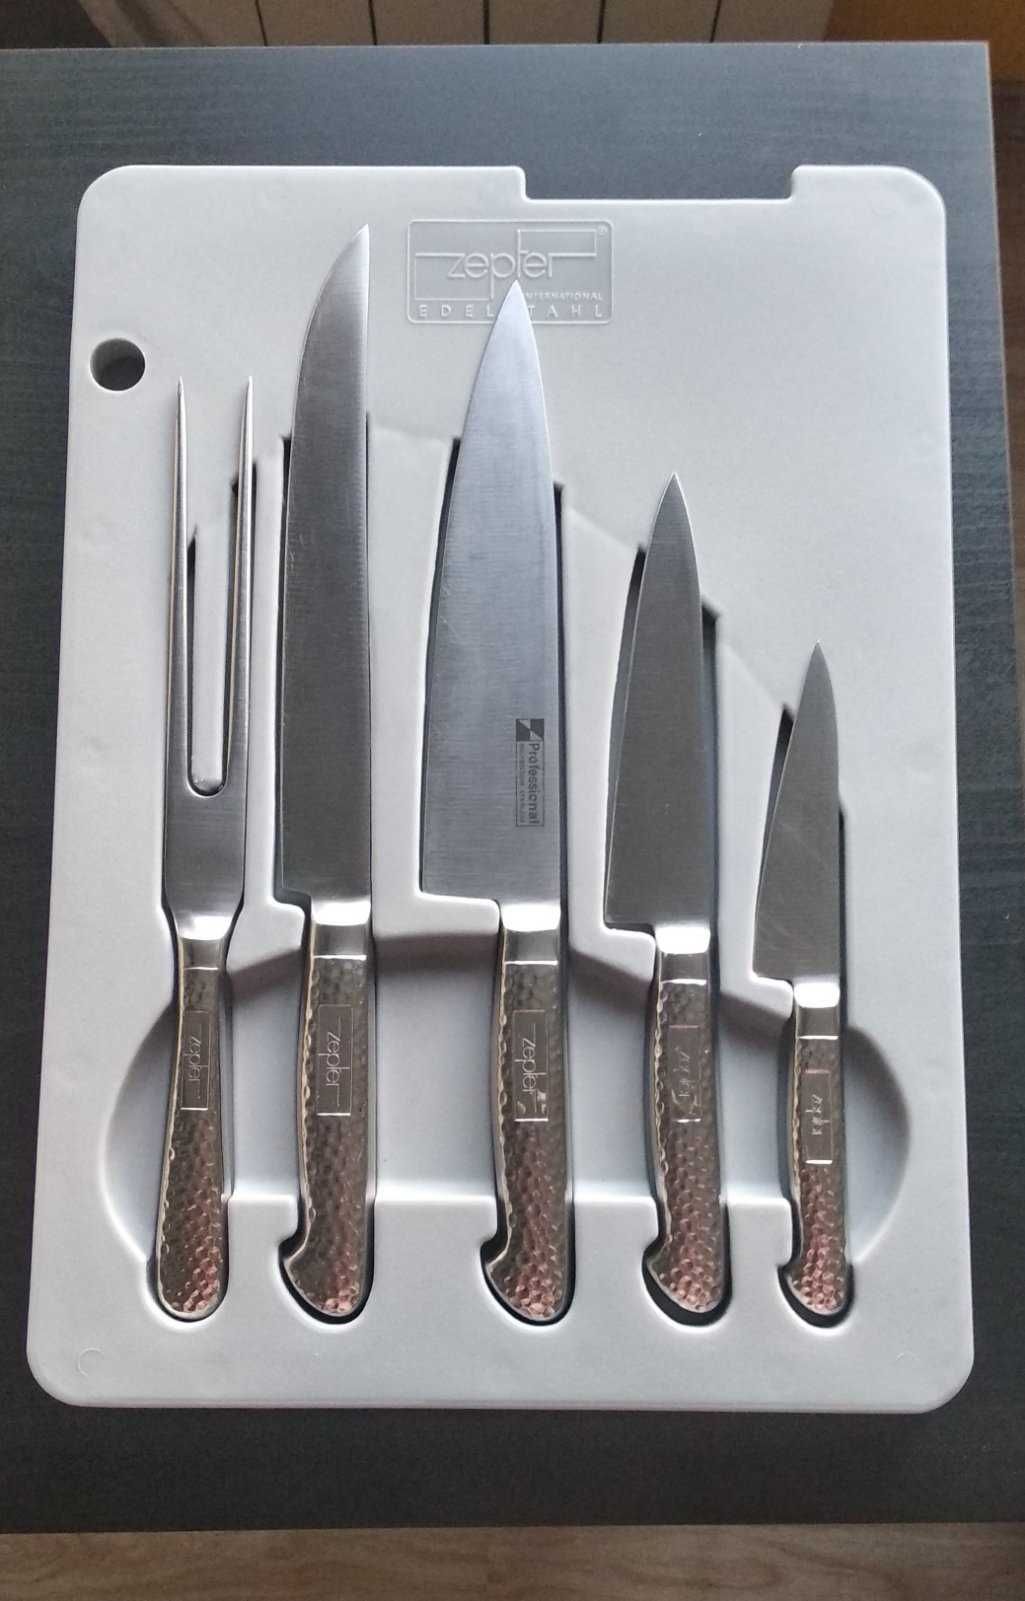 Проф.набор ножей Zepter(молибден)+точилка, доска, футляр для хранения .